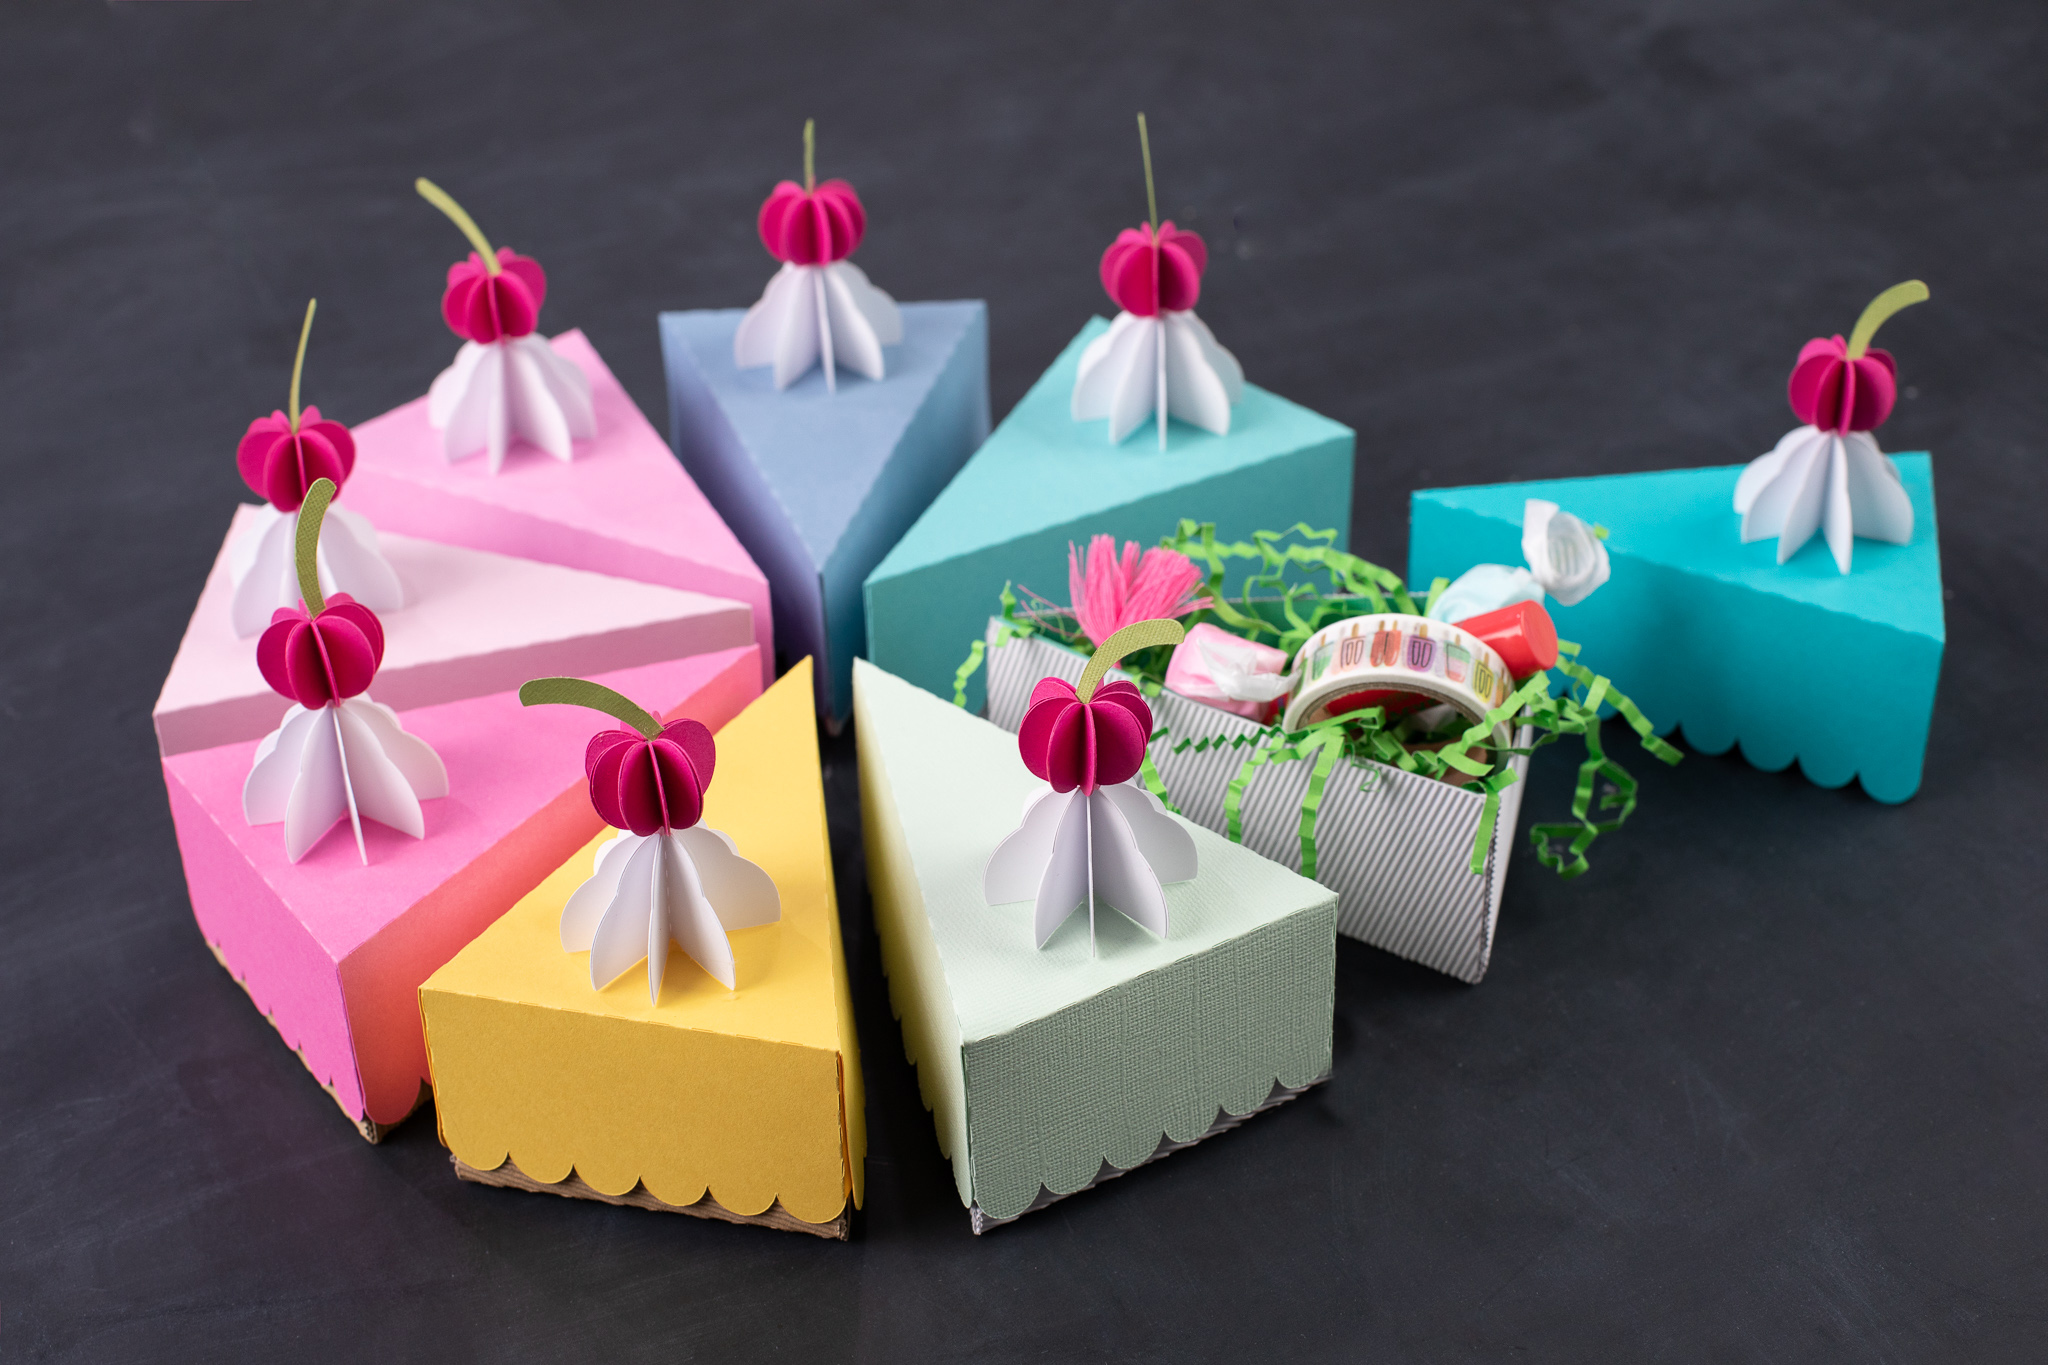 custom cake slice boxes